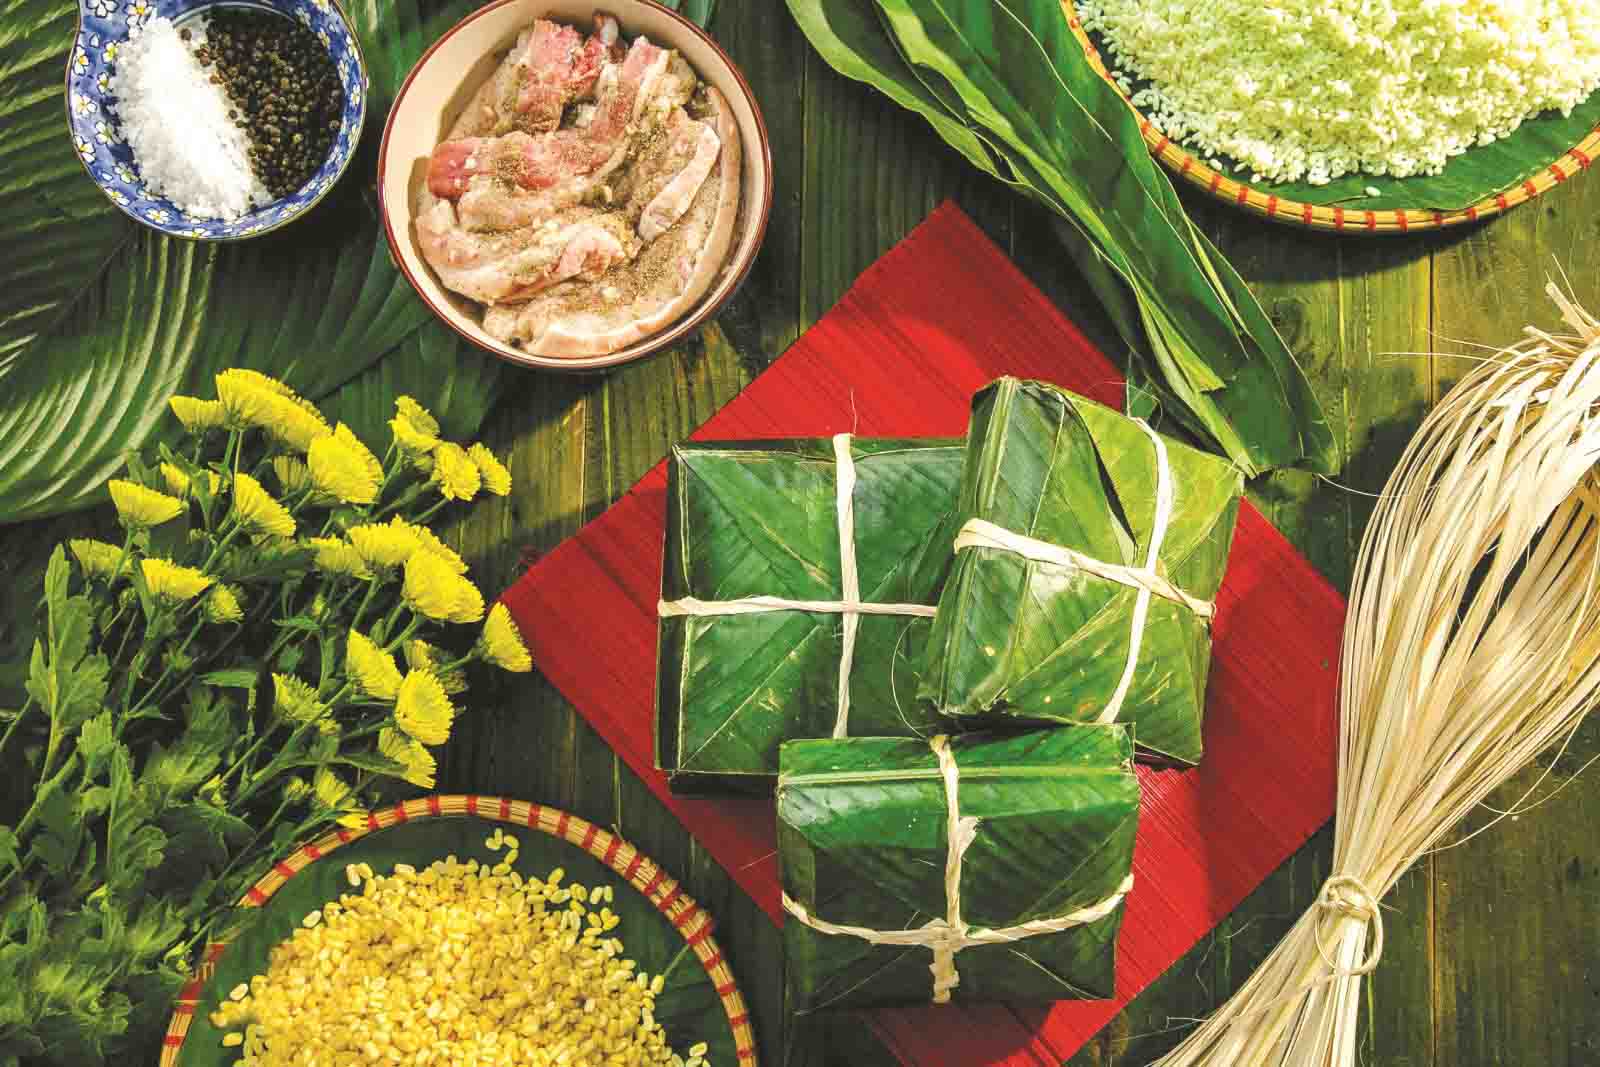 Phong tục gói bánh chưng đã tồn tại từ lâu đời và là một phần quan trọng của văn hóa Việt Nam. Đây là dịp để người thân quây quần bên nhau và chuẩn bị cho ngày lễ trọng đại. Hãy xem hình ảnh về gói bánh chưng để hiểu rõ hơn về nét đẹp văn hóa truyền thống của Việt Nam.